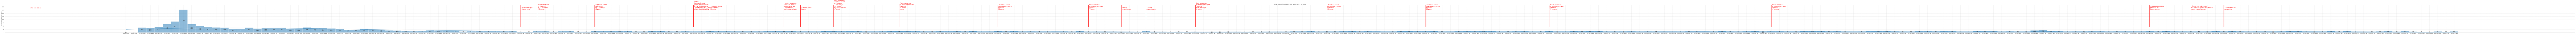 Гистограмма, показывающая количество предложений домов, дач и коттеджей в Крыму по дням c 2022-01-01 по 2023-05-31